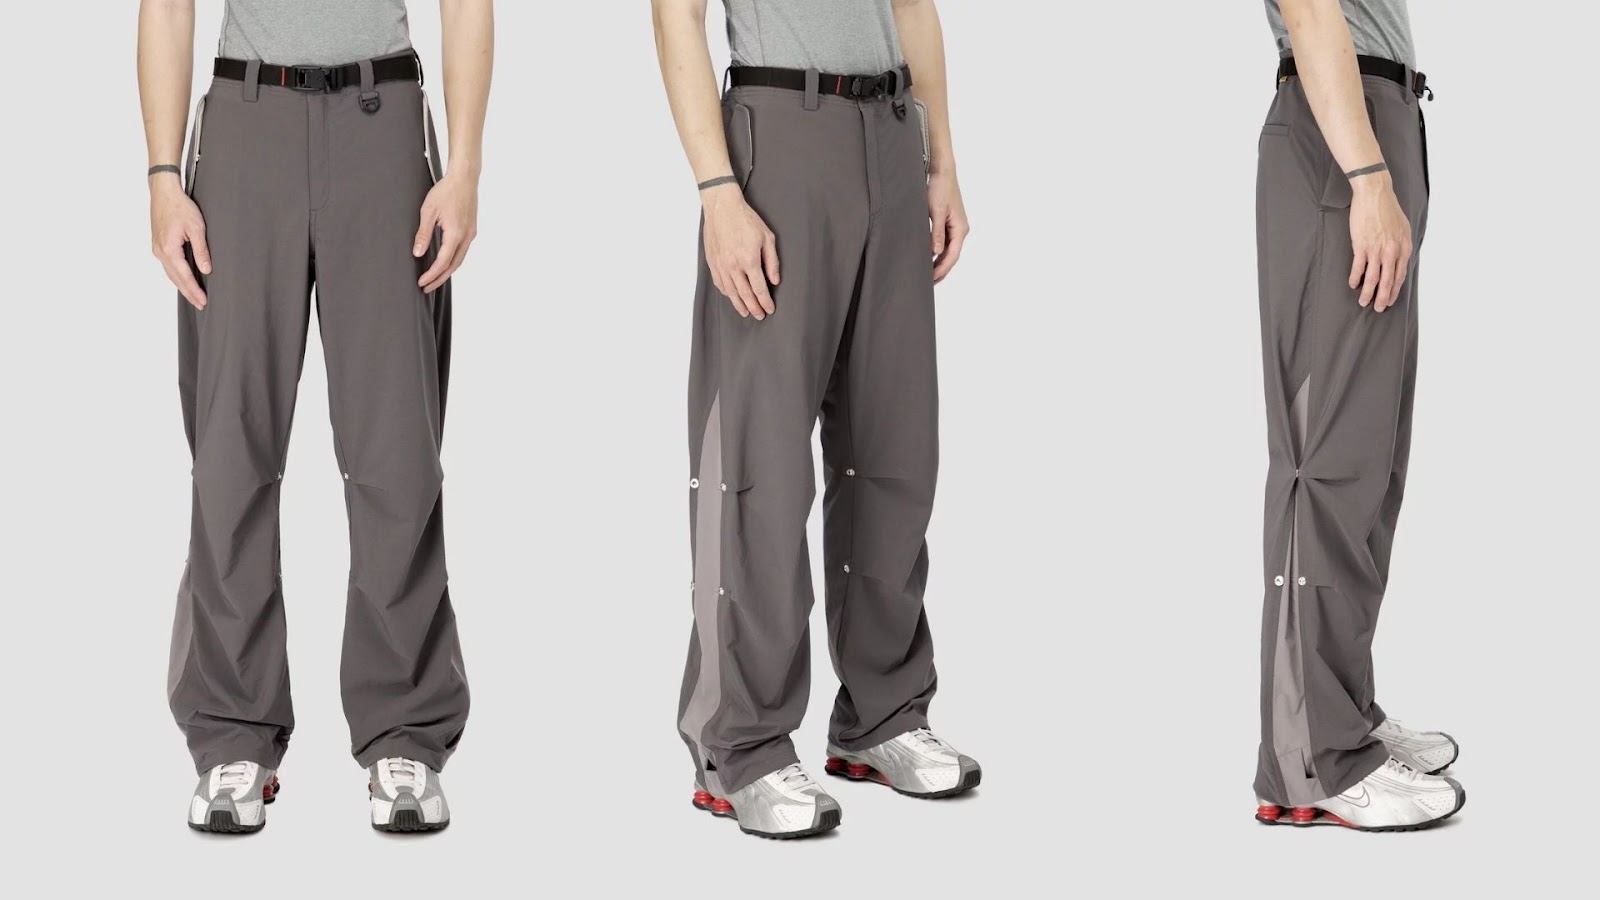 Top 8 (GK-1H) 4 Way Stretch Woven Techwear Pants – 4dimension